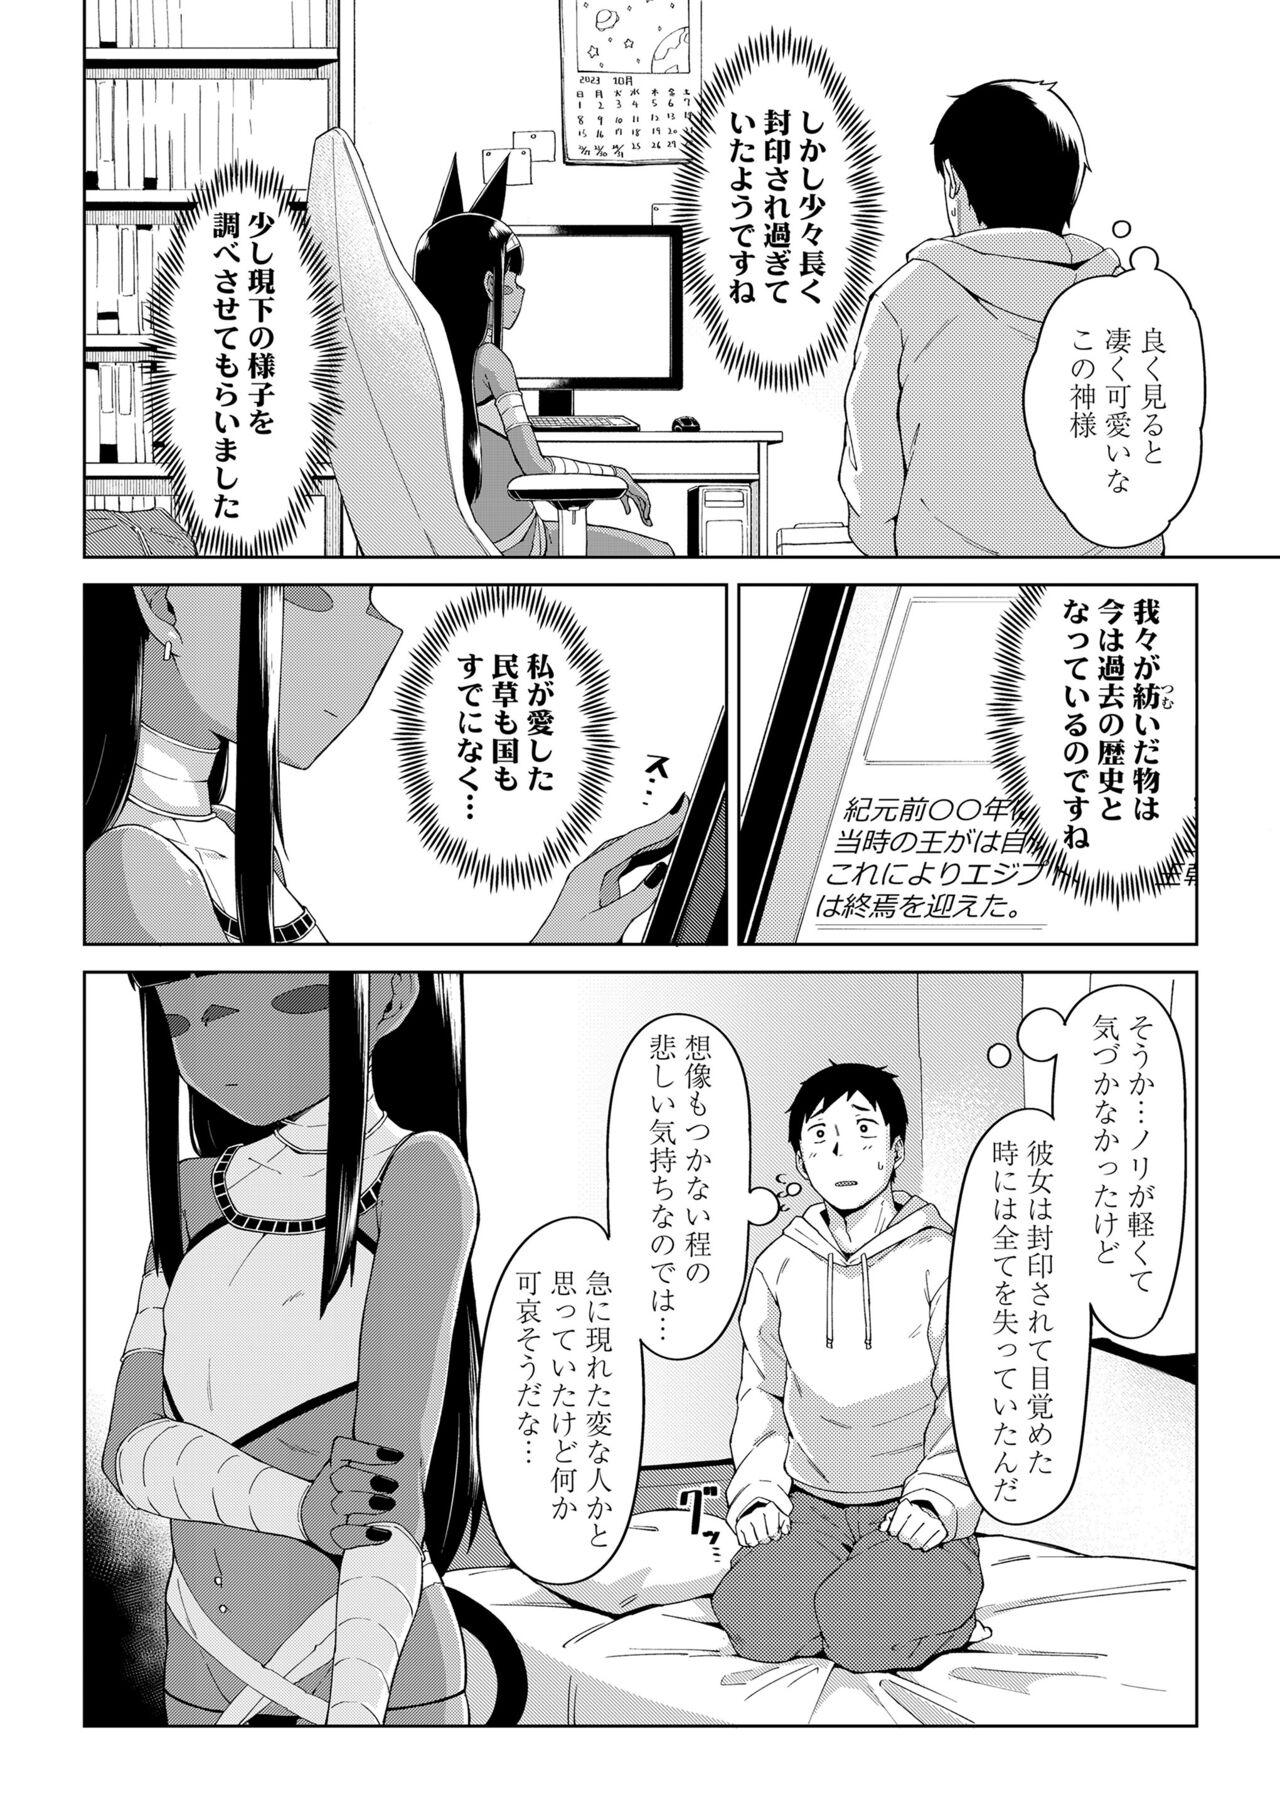 Leaked Towako Oboro Emaki 13 Culos - Page 6